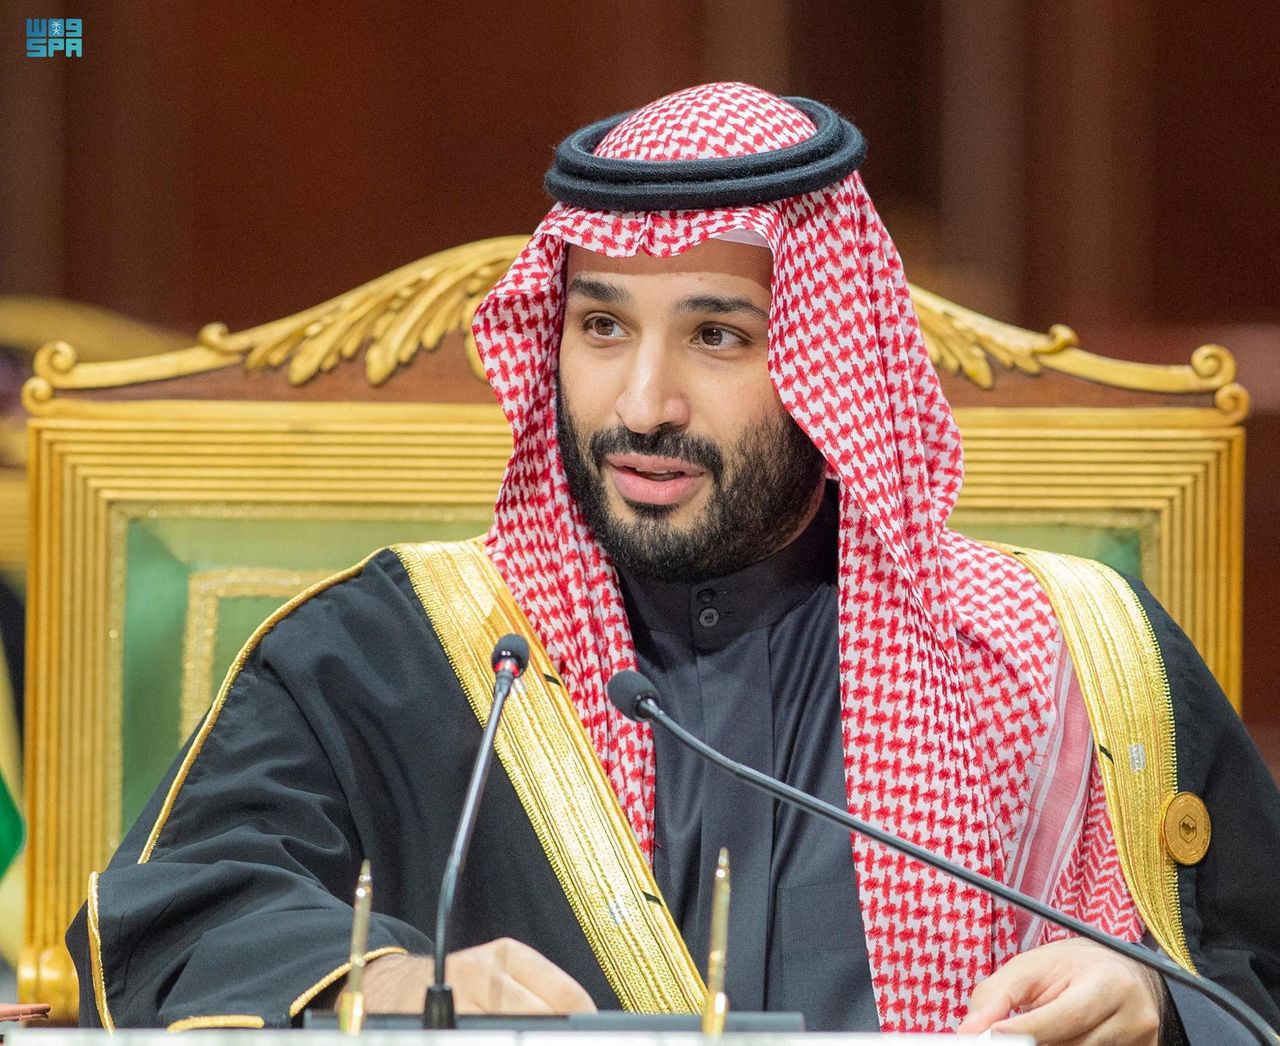 Imagen de archivo del príncipe heredero de Arabia Saudita, Mohammed bin Salman, hablando durante la Cumbre del Golfo en Riad, Arabia Saudita. 14 de diciembre, 2021. Bandar Saudi Press Agency/Handout via REUTERS